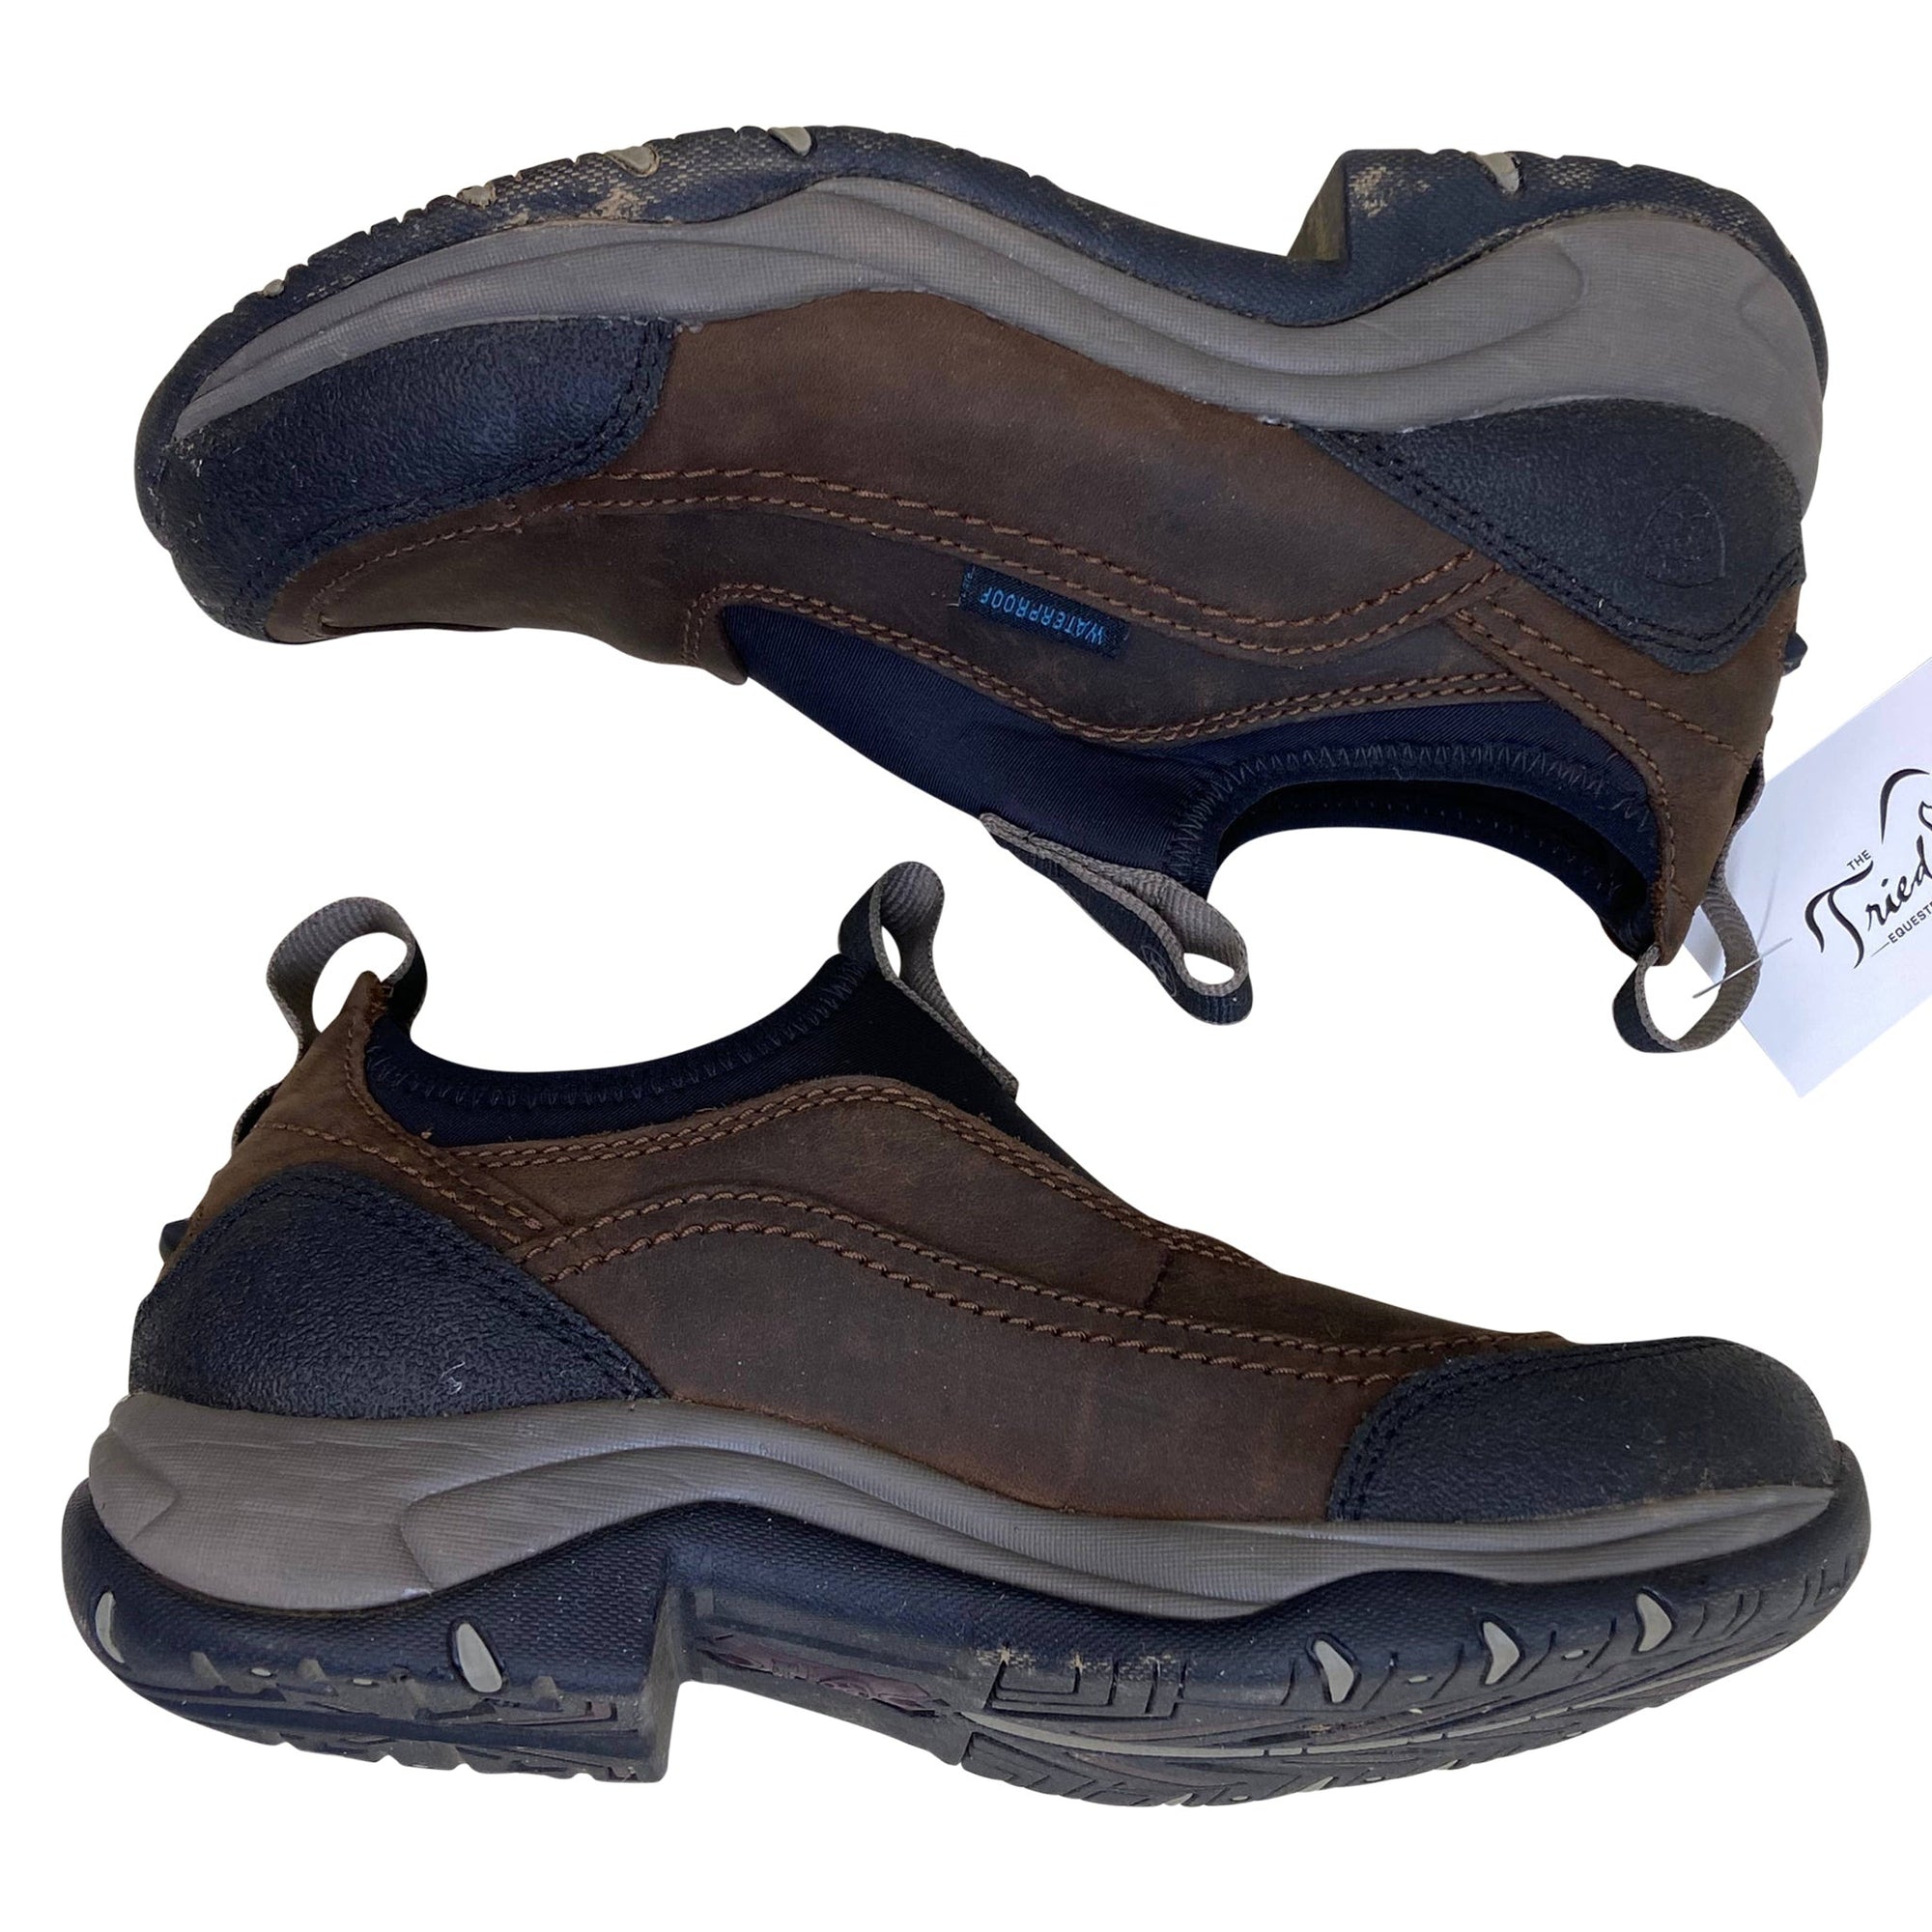 Ariat Terrain Ease Waterproof Shoes in Distressed Brown